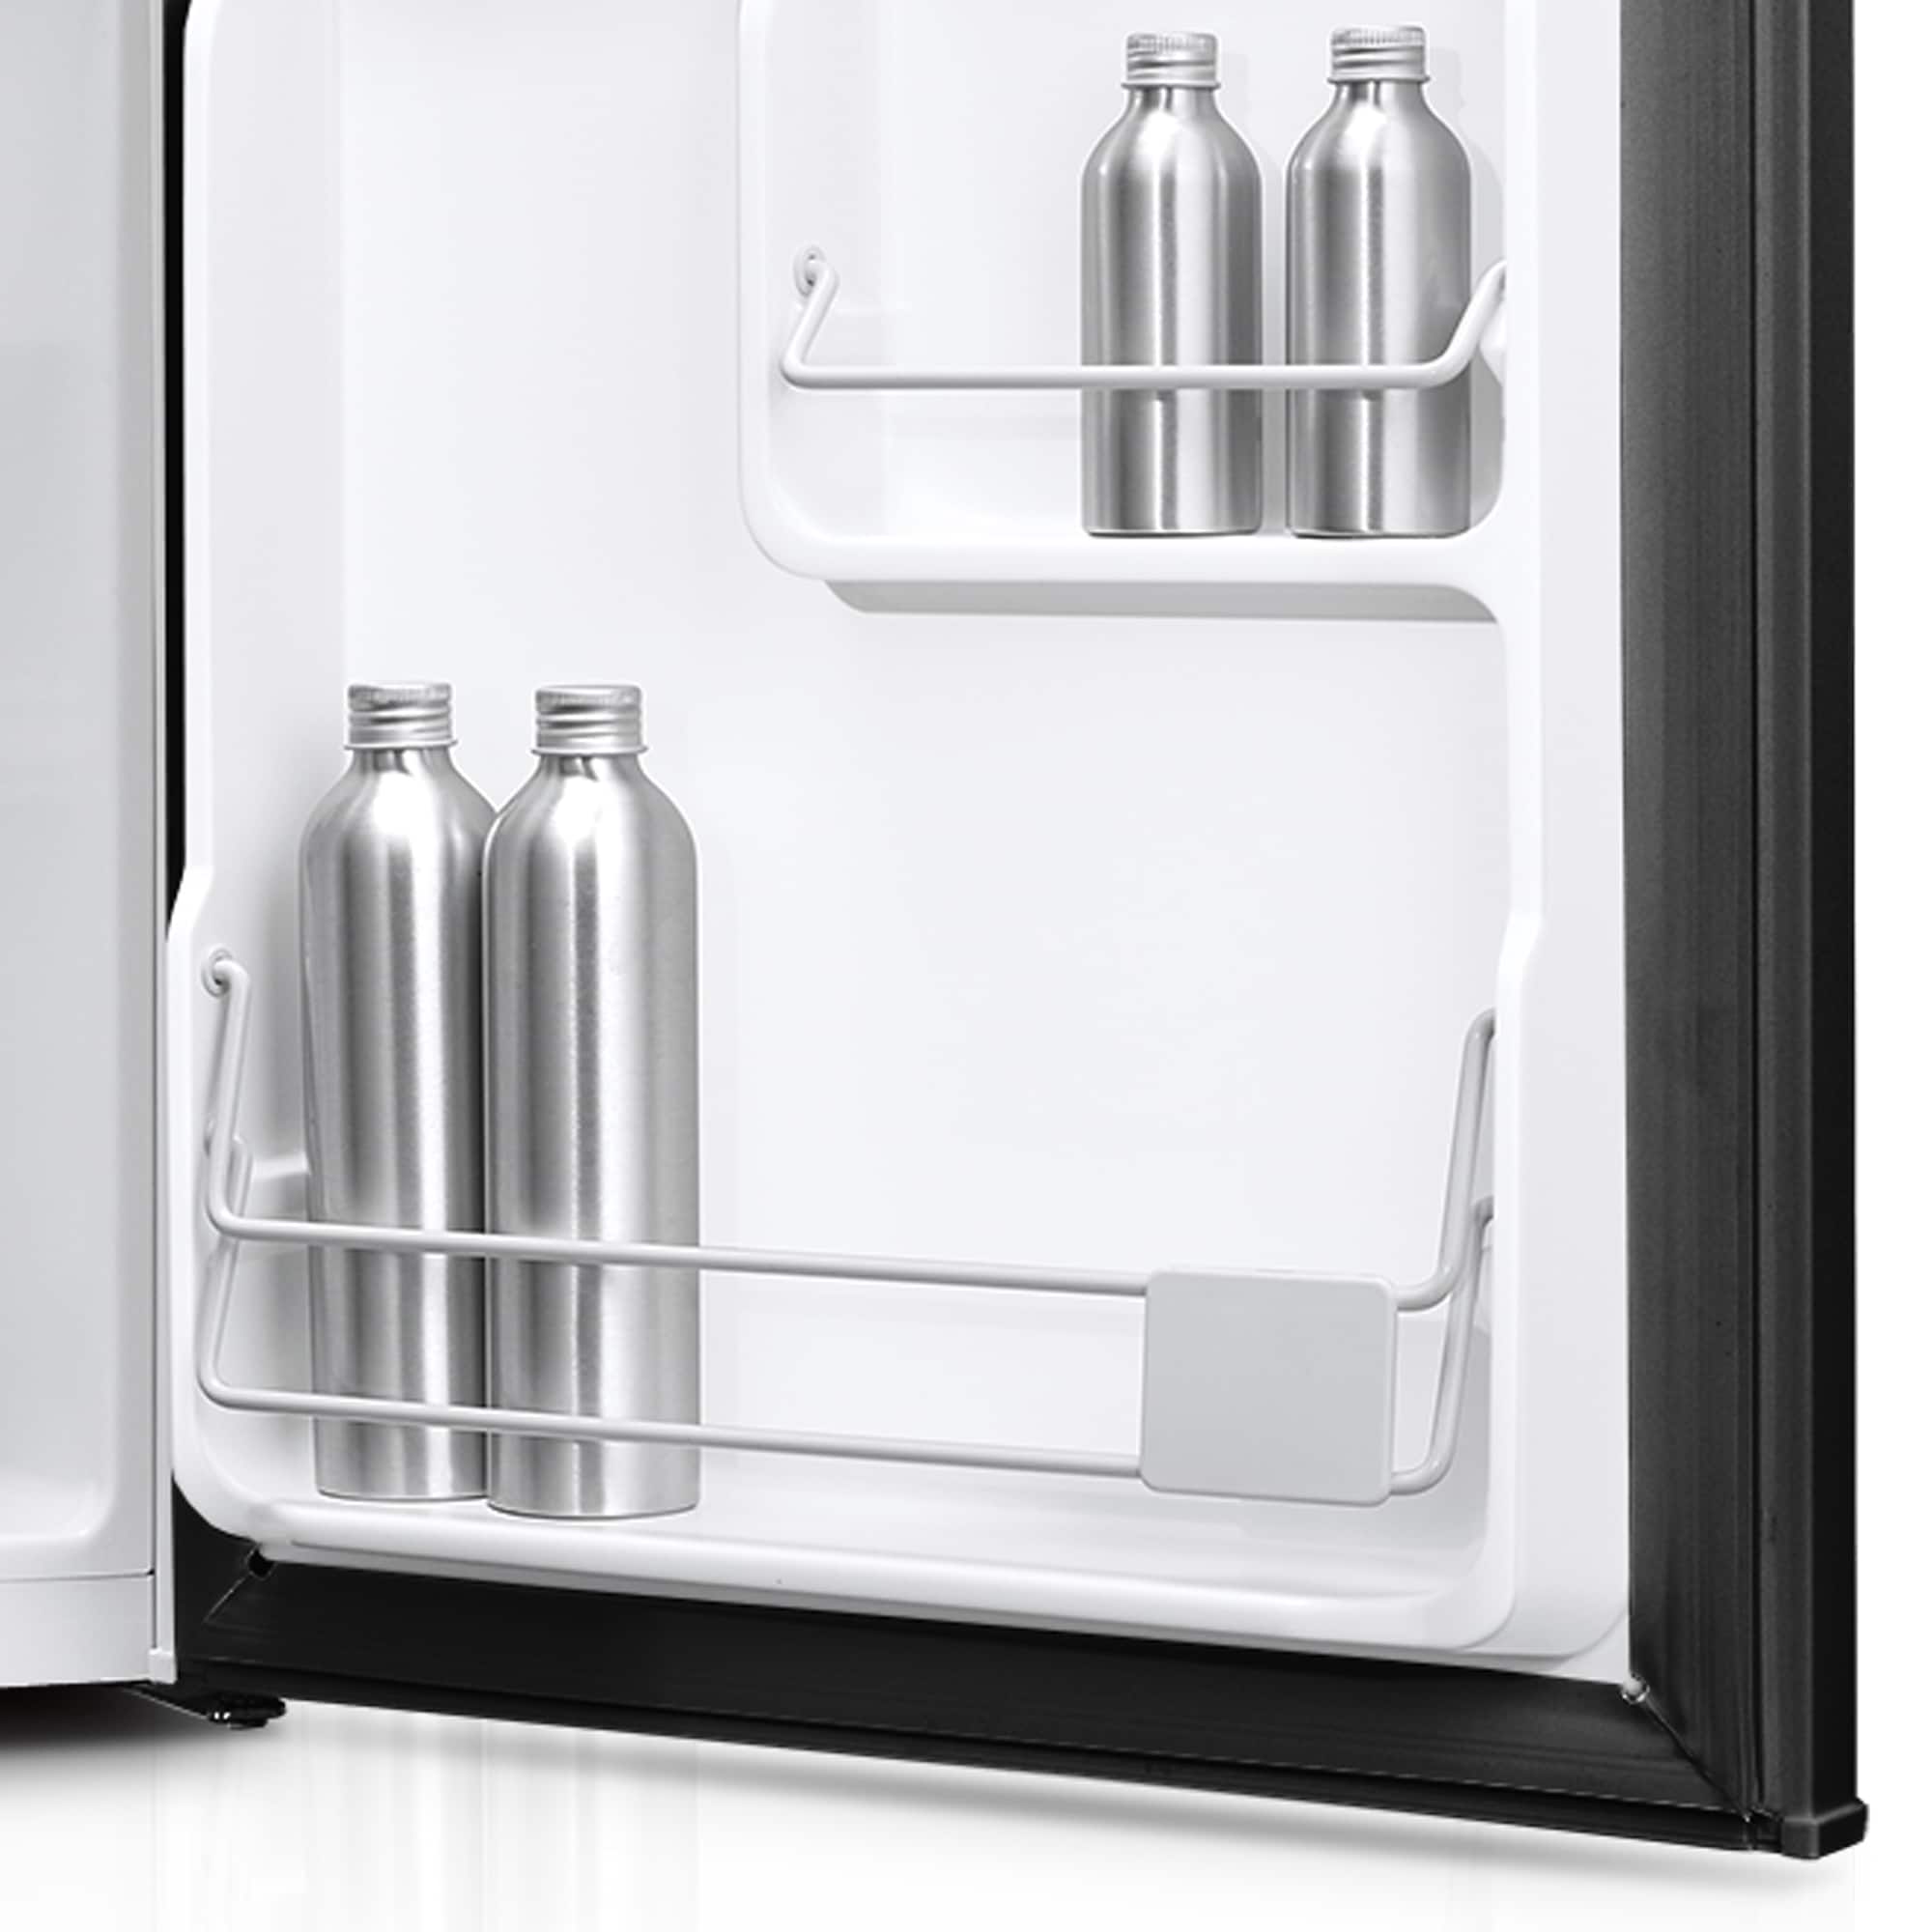 Impecca Refrigerador compacto de 1.7 pies cúbicos con congelador y puerta  individual reversible (negro)